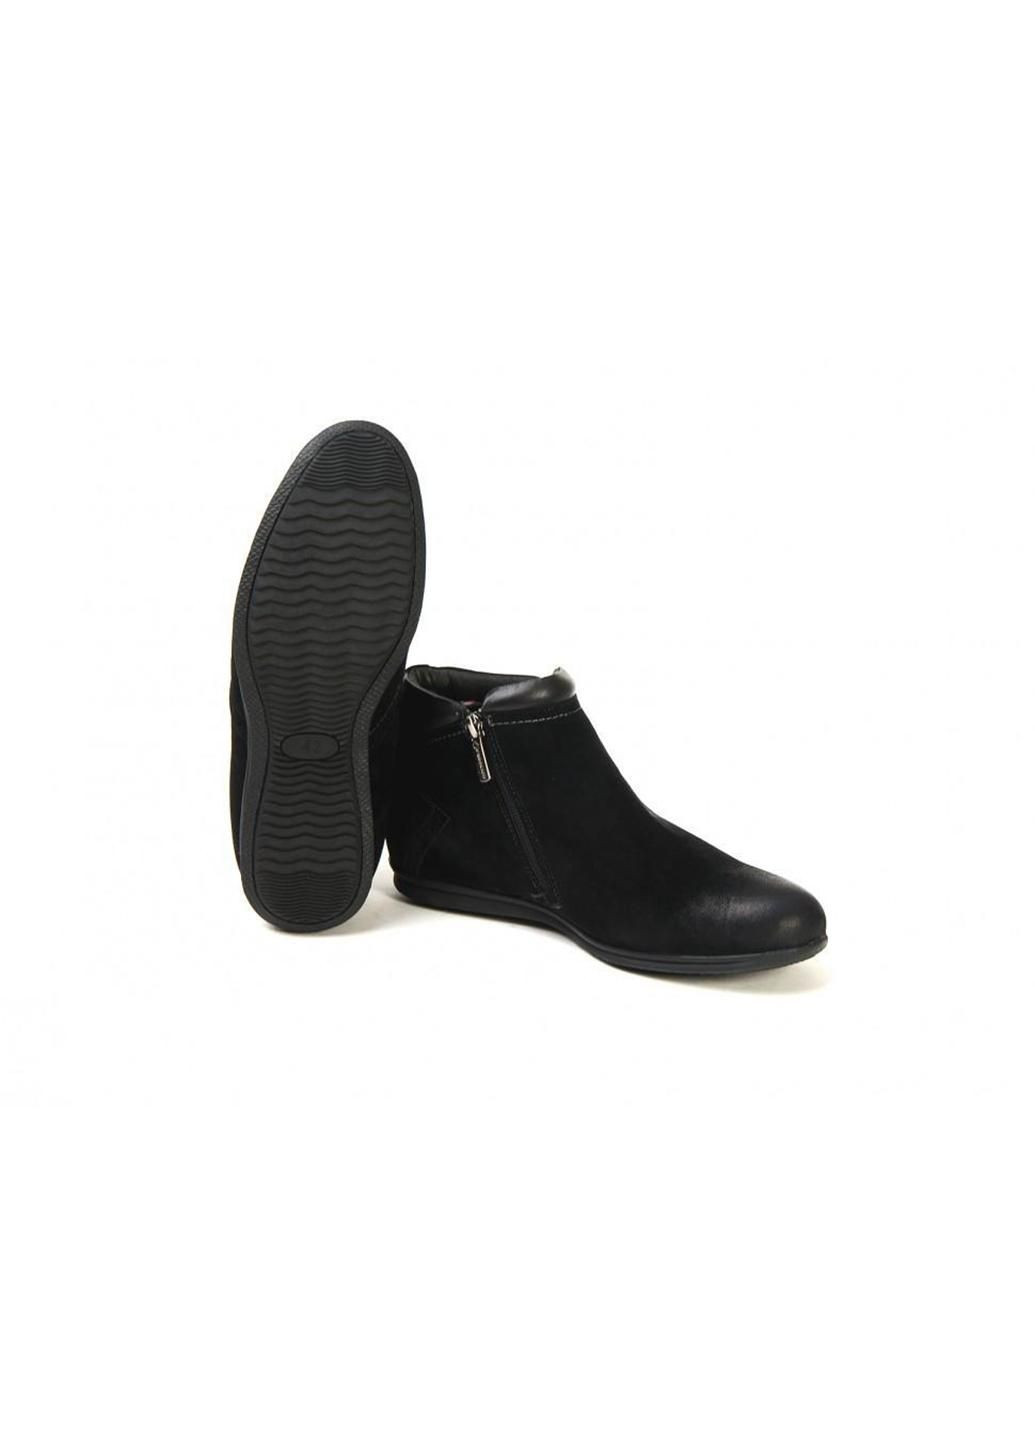 Черные ботинки 7134993 44 цвет черный Fermani